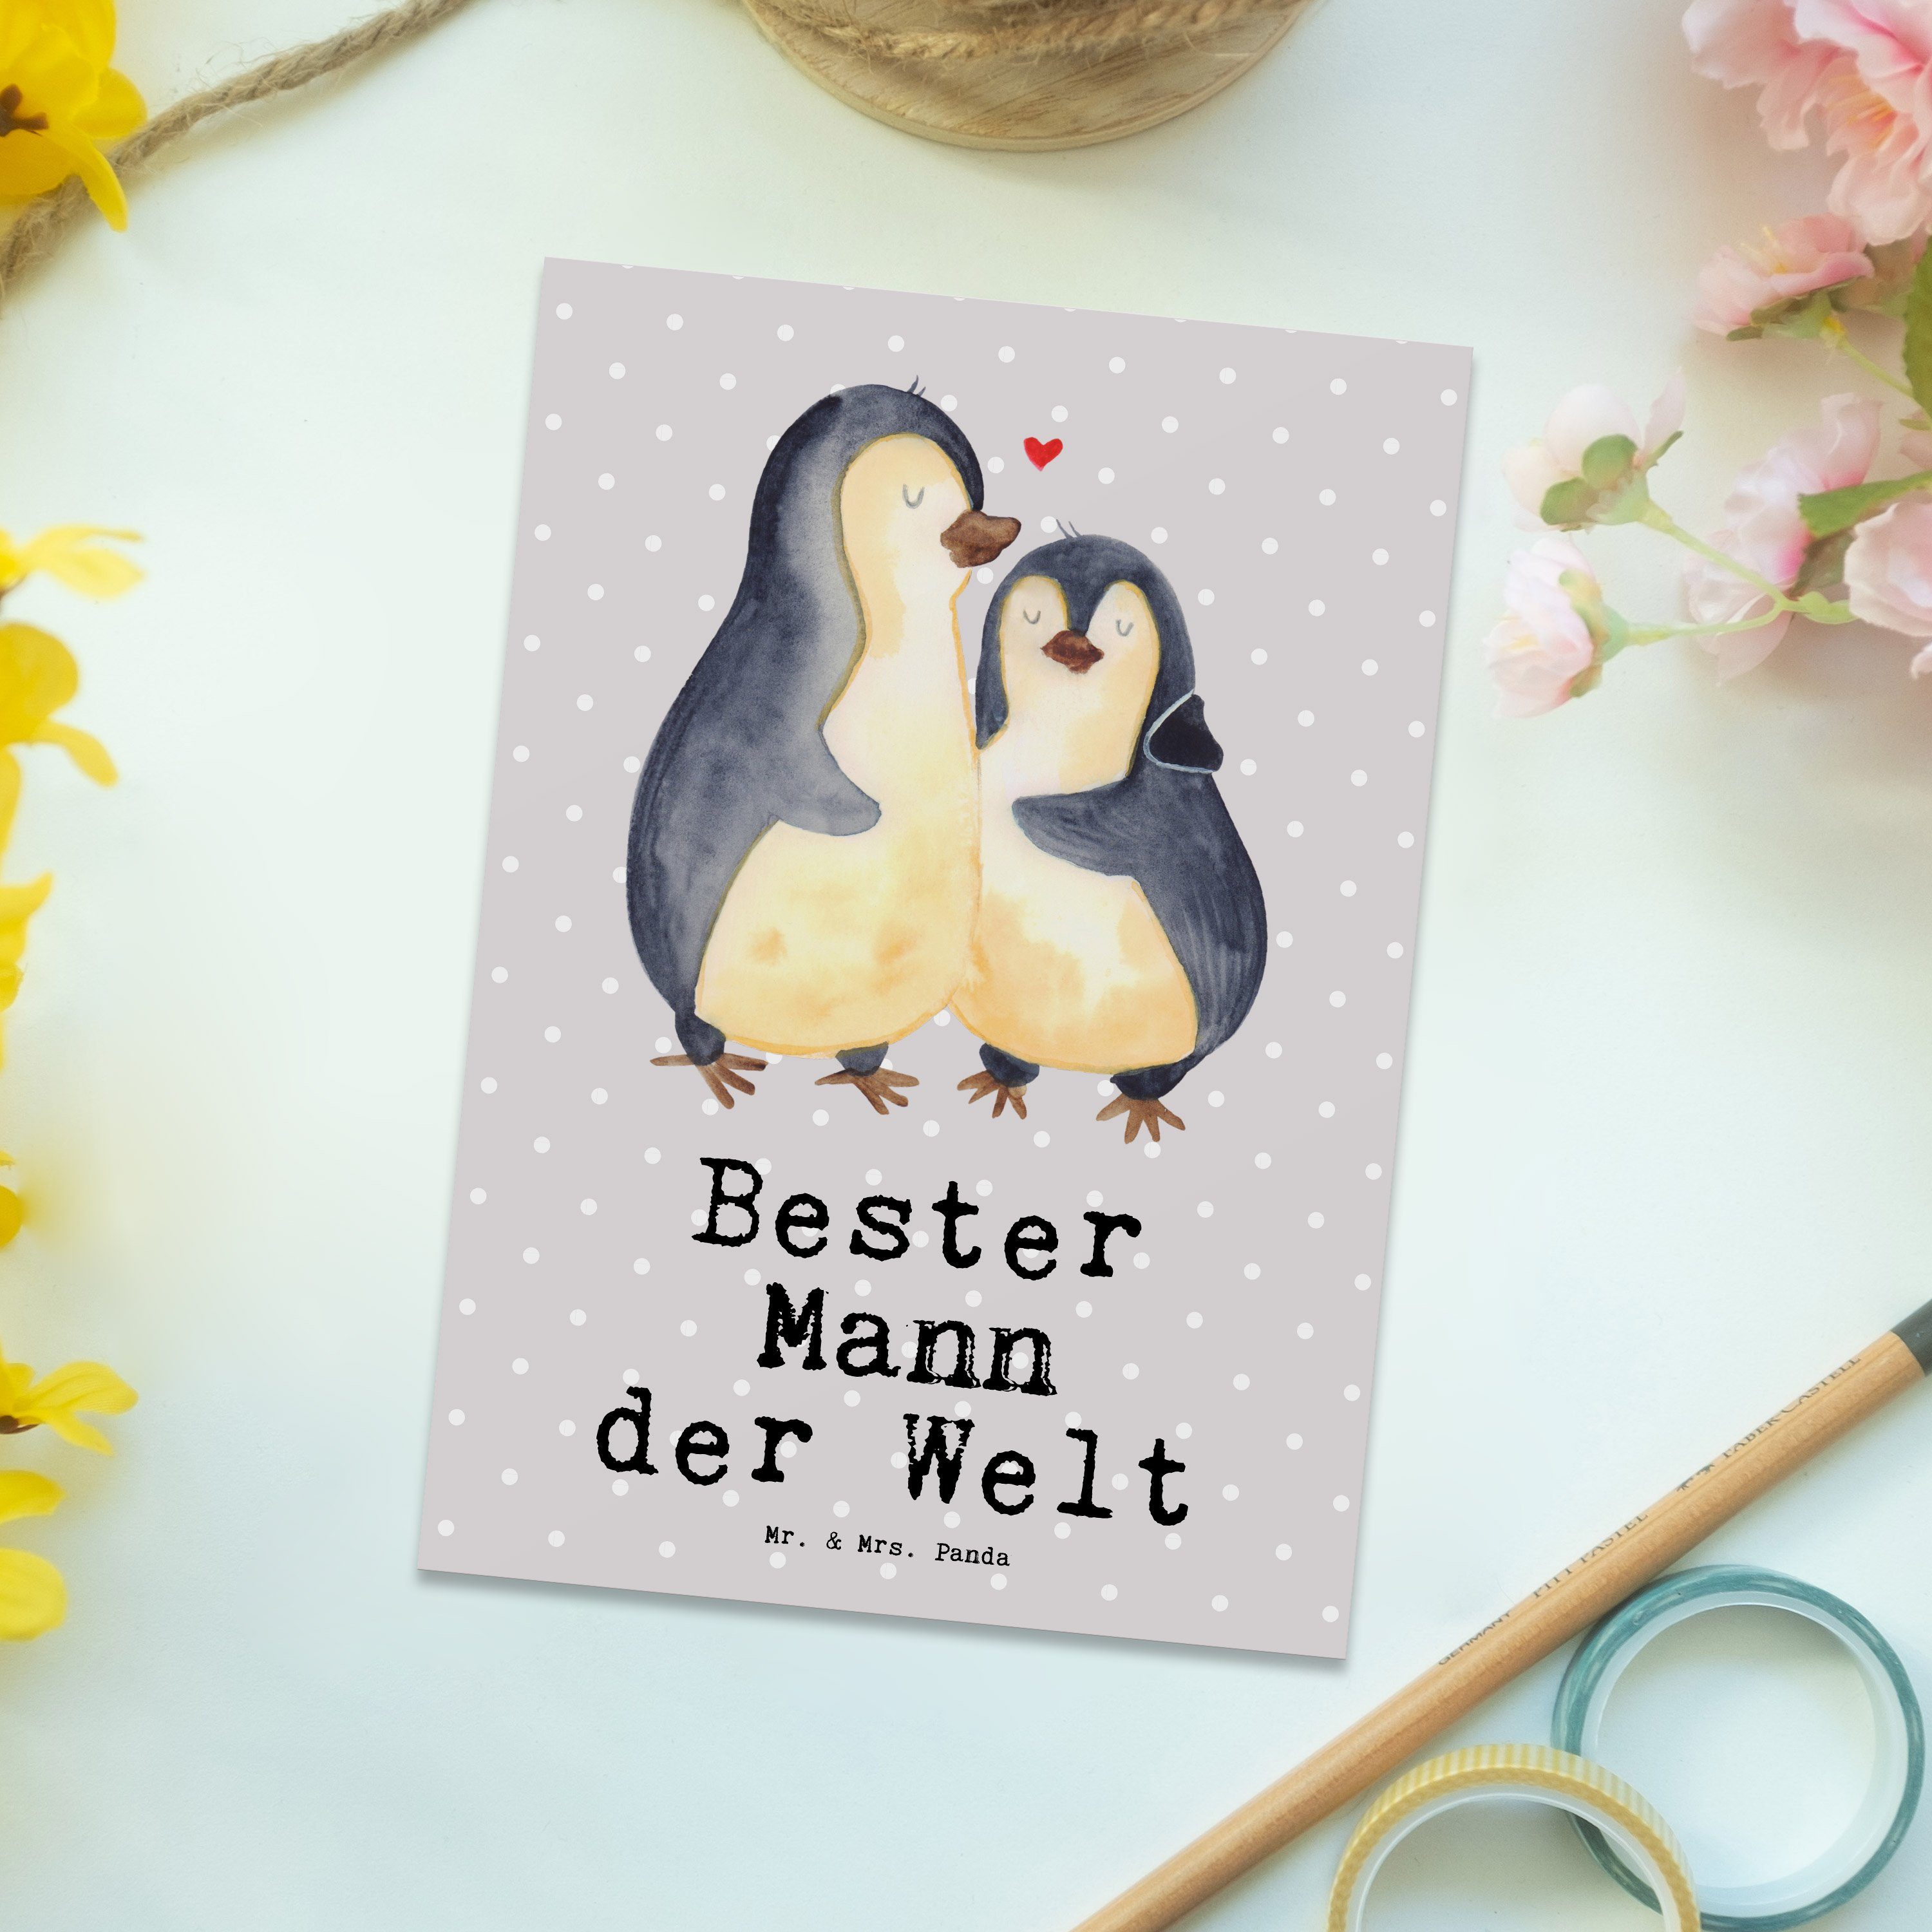 Mr. & Mrs. Panda Postkarte Pinguin Bester Mann der Welt - Grau Pastell - Geschenk, Geburtstagska